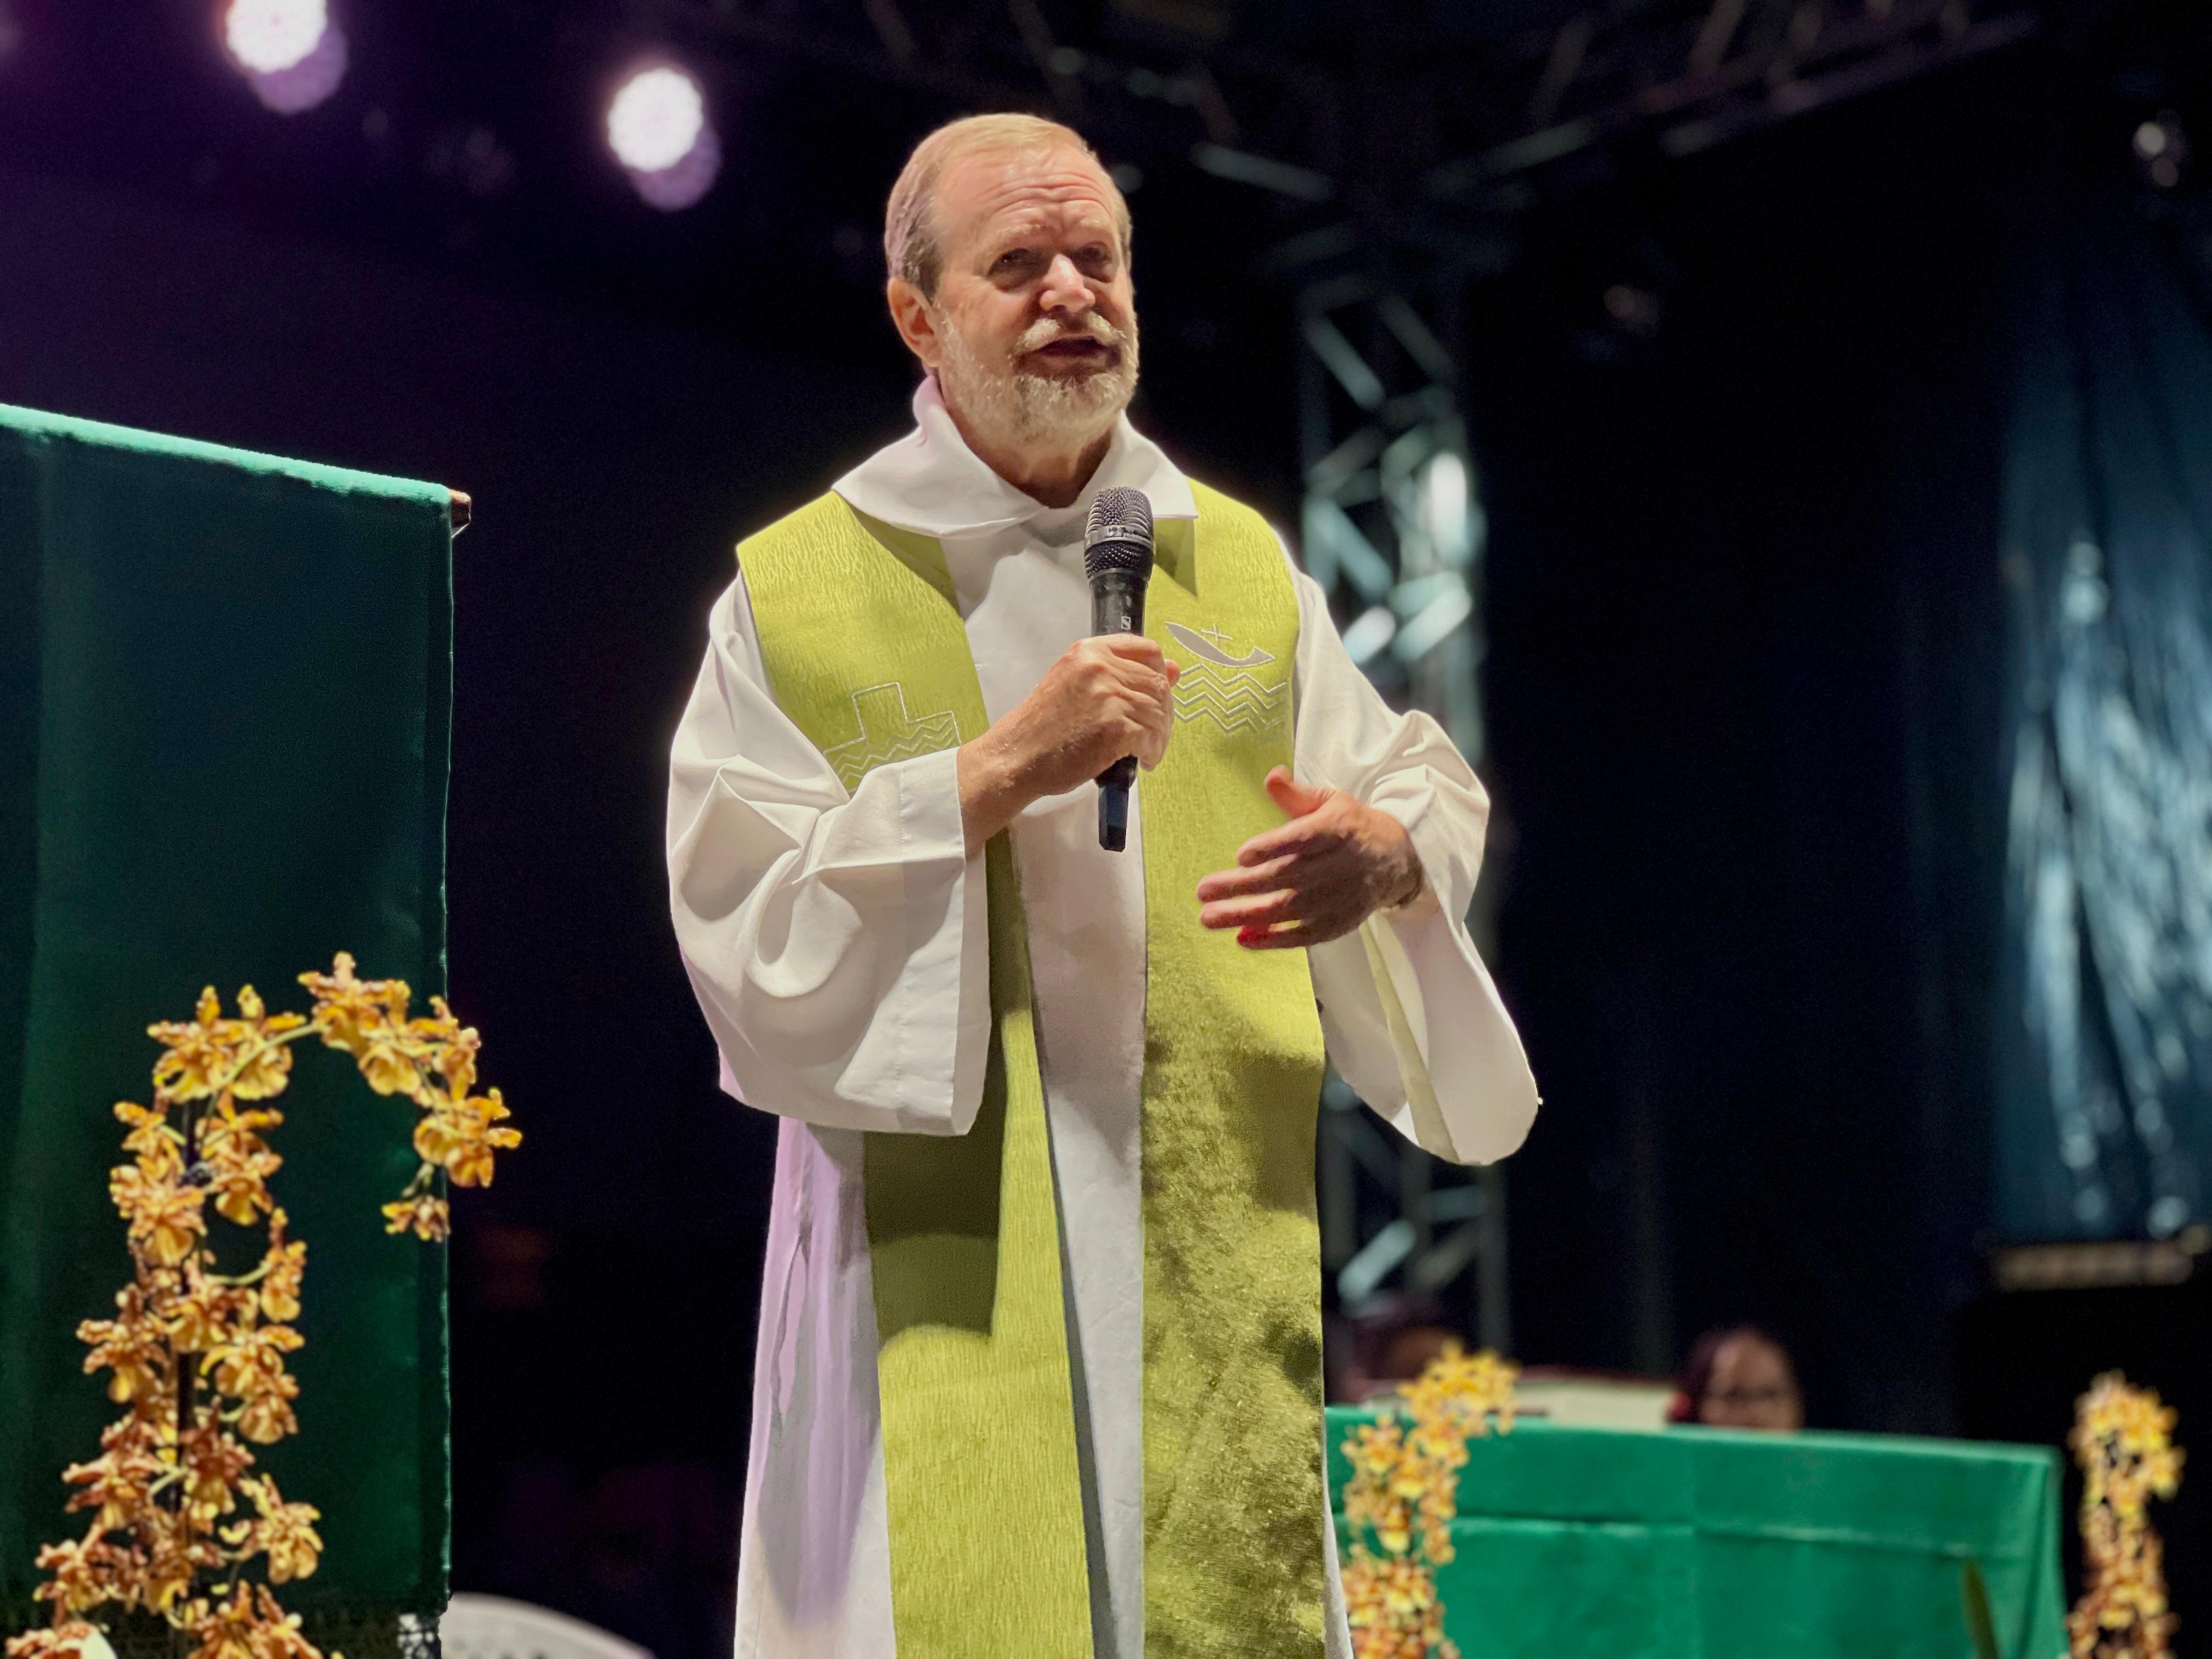 Padre celebra Missa de Despedida dos Turistas, em Piúma 